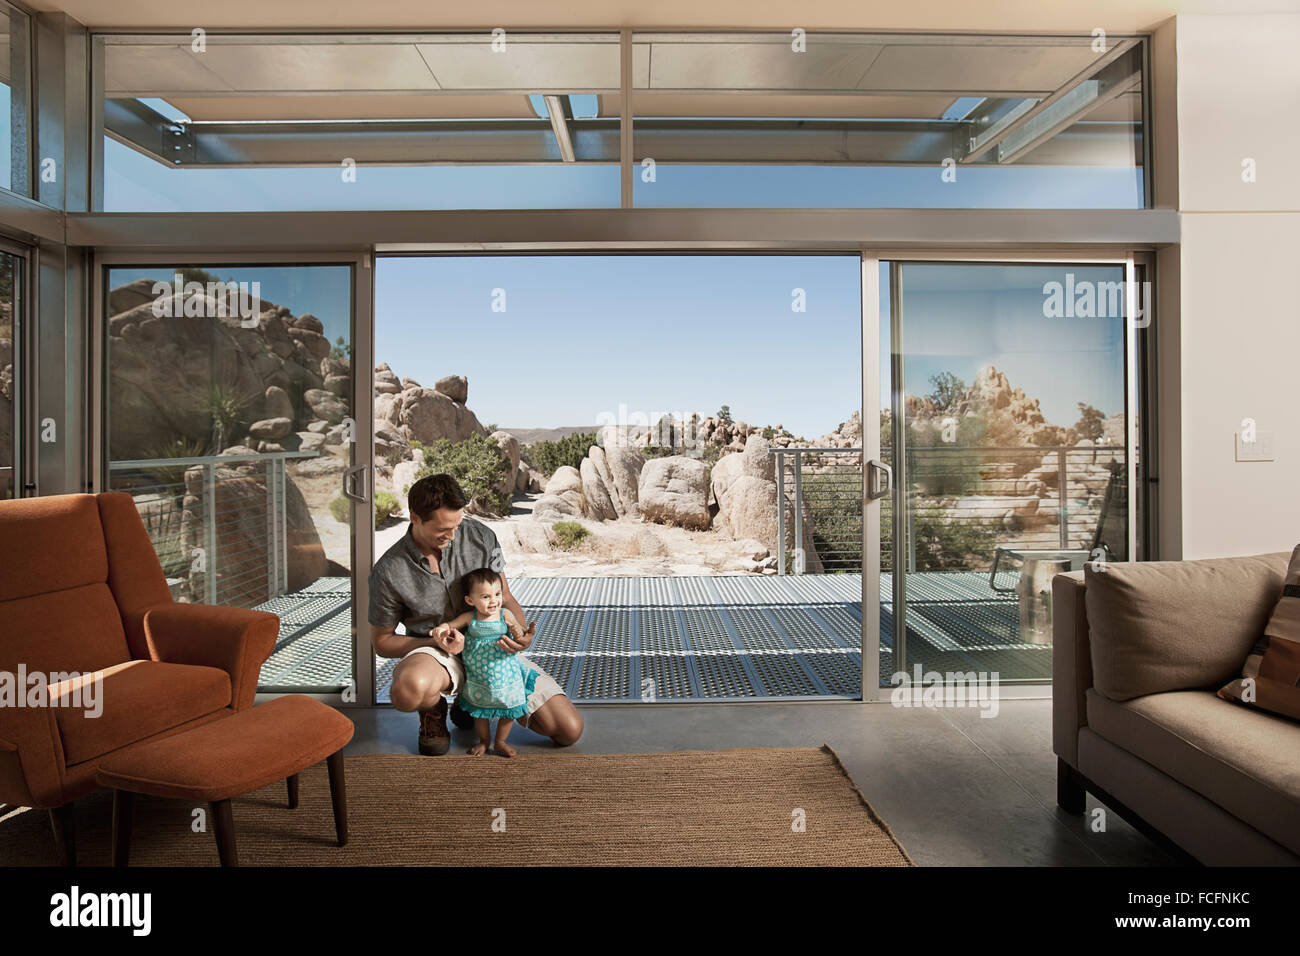 Ein Mann und ein kleines Kind in ein Ökohaus, ein Haus mit großen Glaswänden und Blick über die felsige Landschaft. Stockfoto